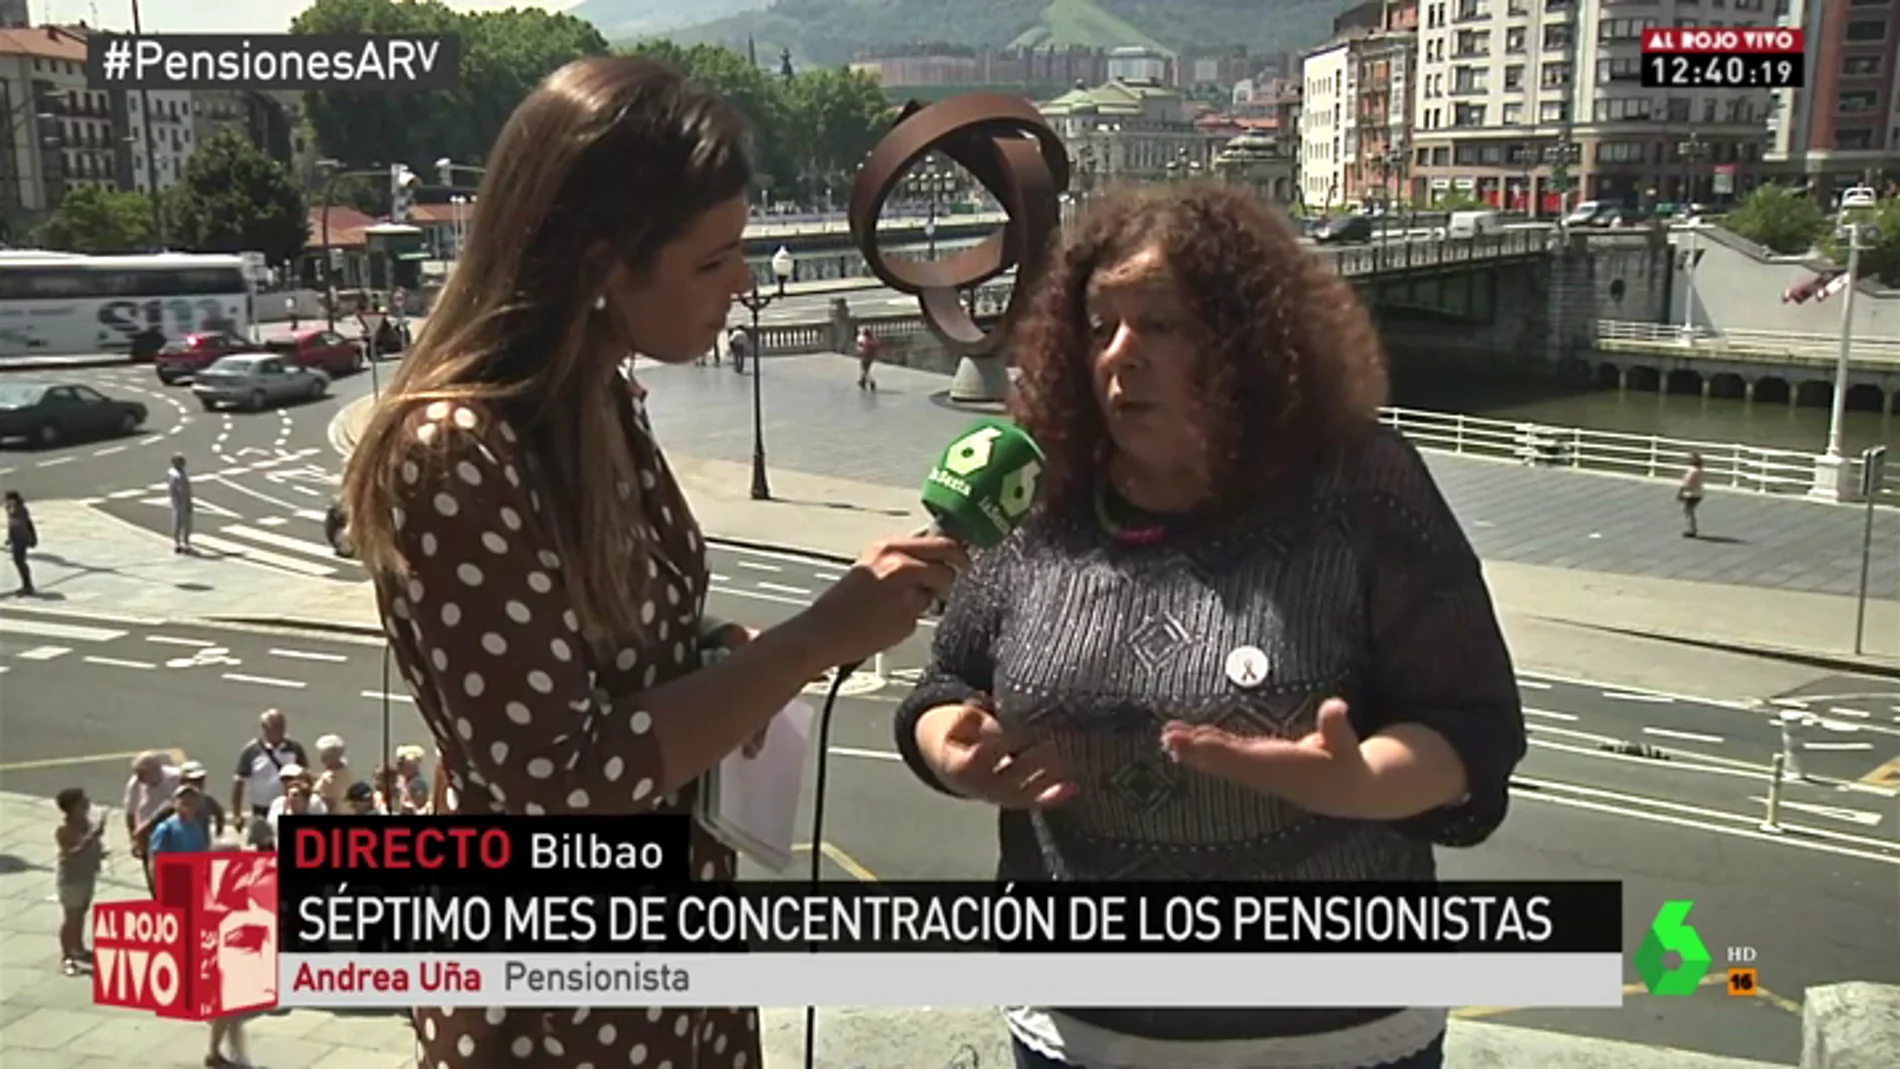 La reivindicación de Andrea Uña, pensionista: "No vamos a parar hasta lograr una pensión mínima de 1.080 euros"